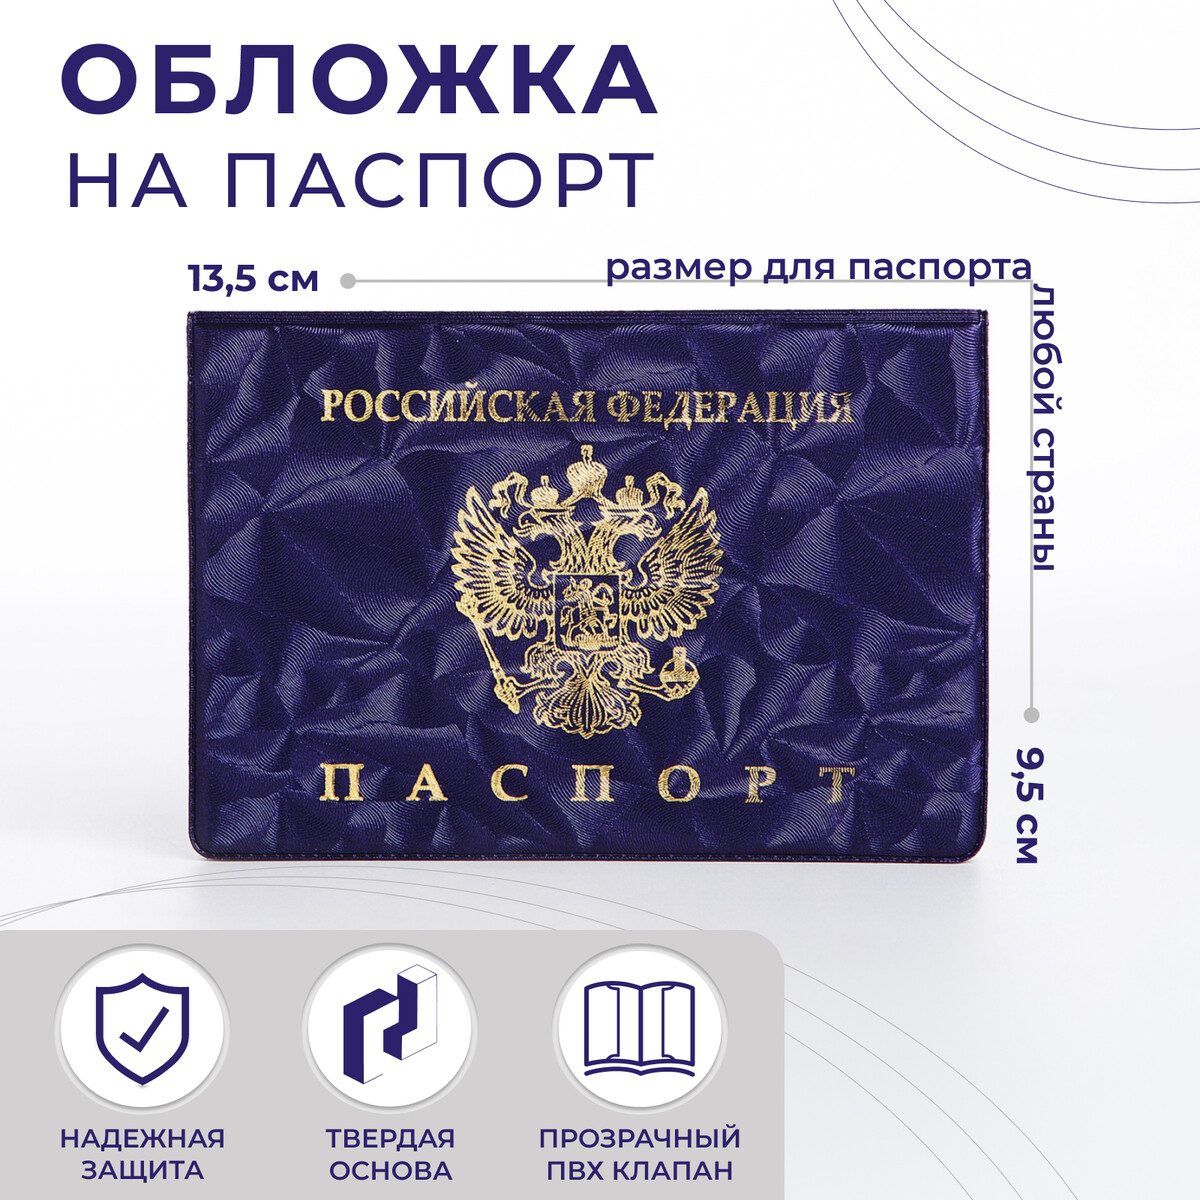 Обложка для паспорта, цвет фиолетовый No brand